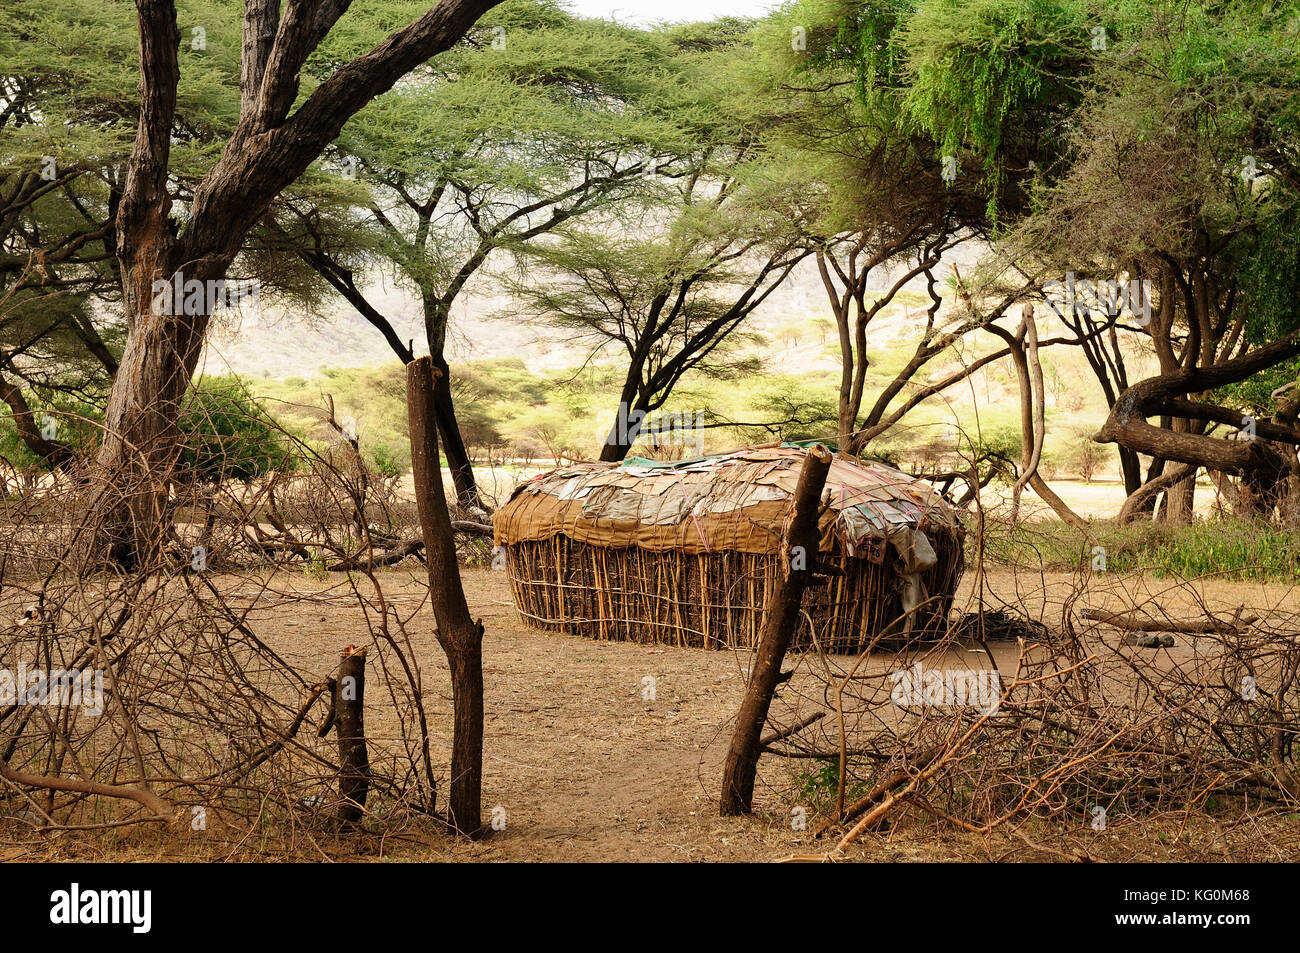 Maison ronde traditionnelle des gens de la tribu samburu dans le sud horr village in Kenya Banque D'Images